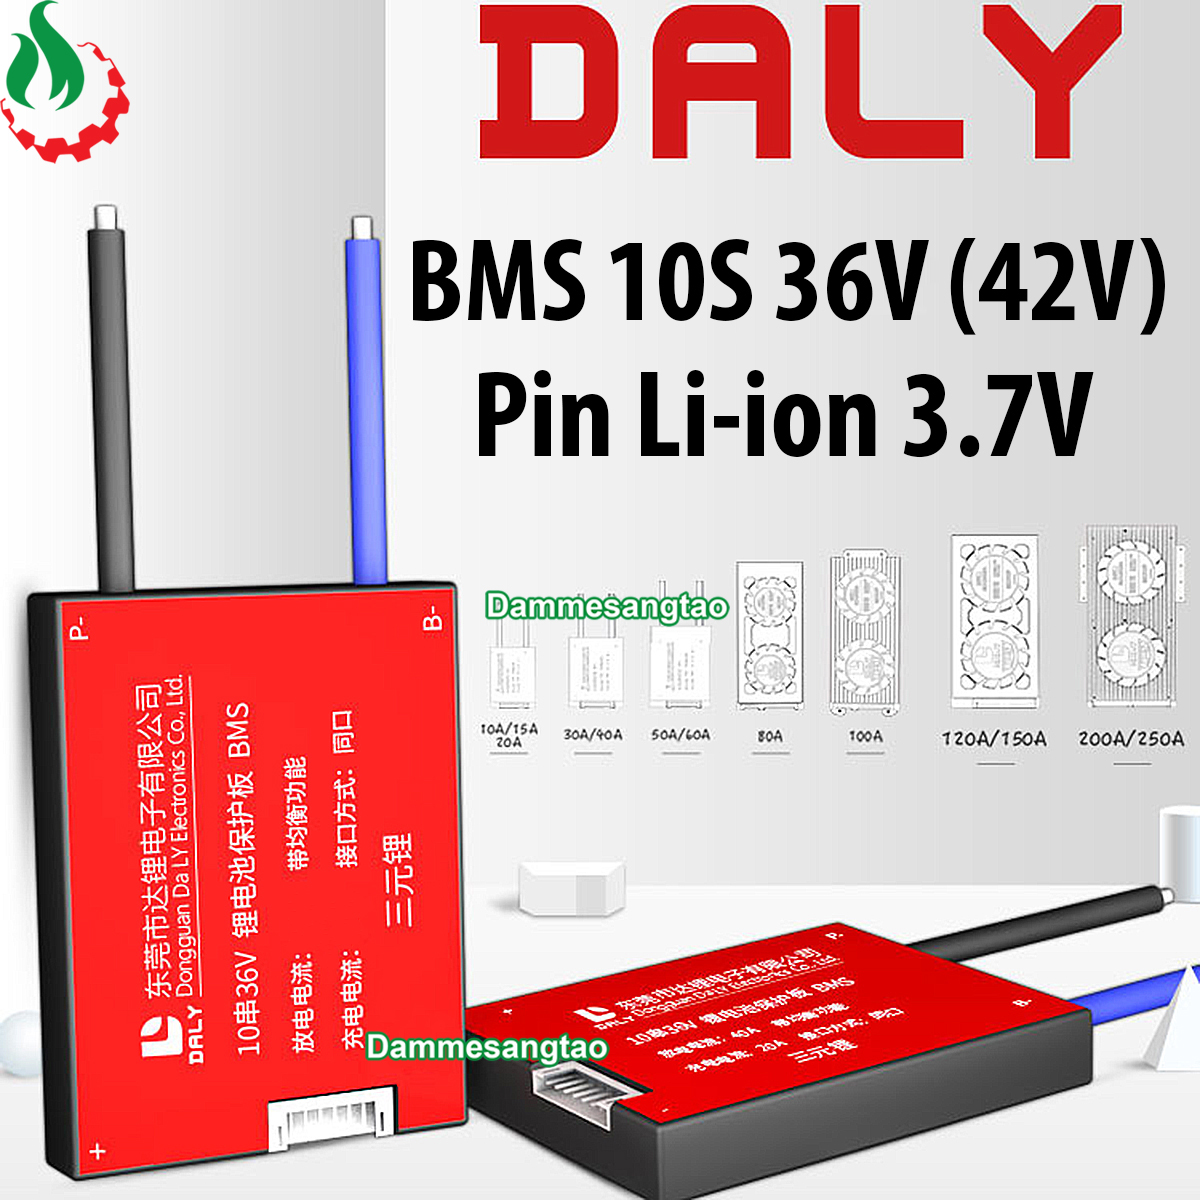 Mạch 10S 36V (42V) Daly bảo vệ pin Li-ion 3.7V xe điện